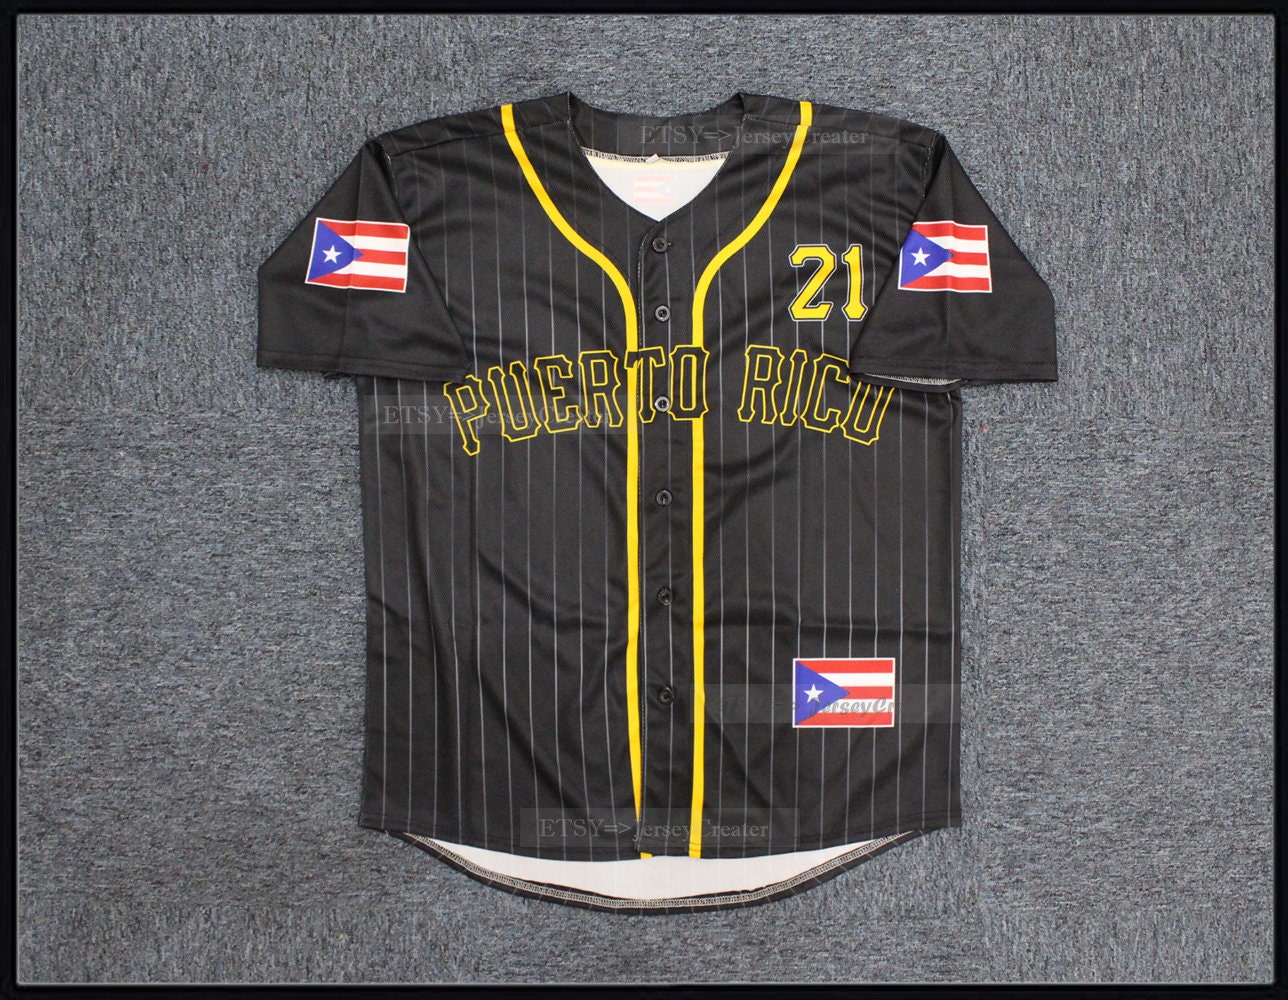 Design Roberto Clemente 21 Puerto Rico Baseball Jersey -  Hong